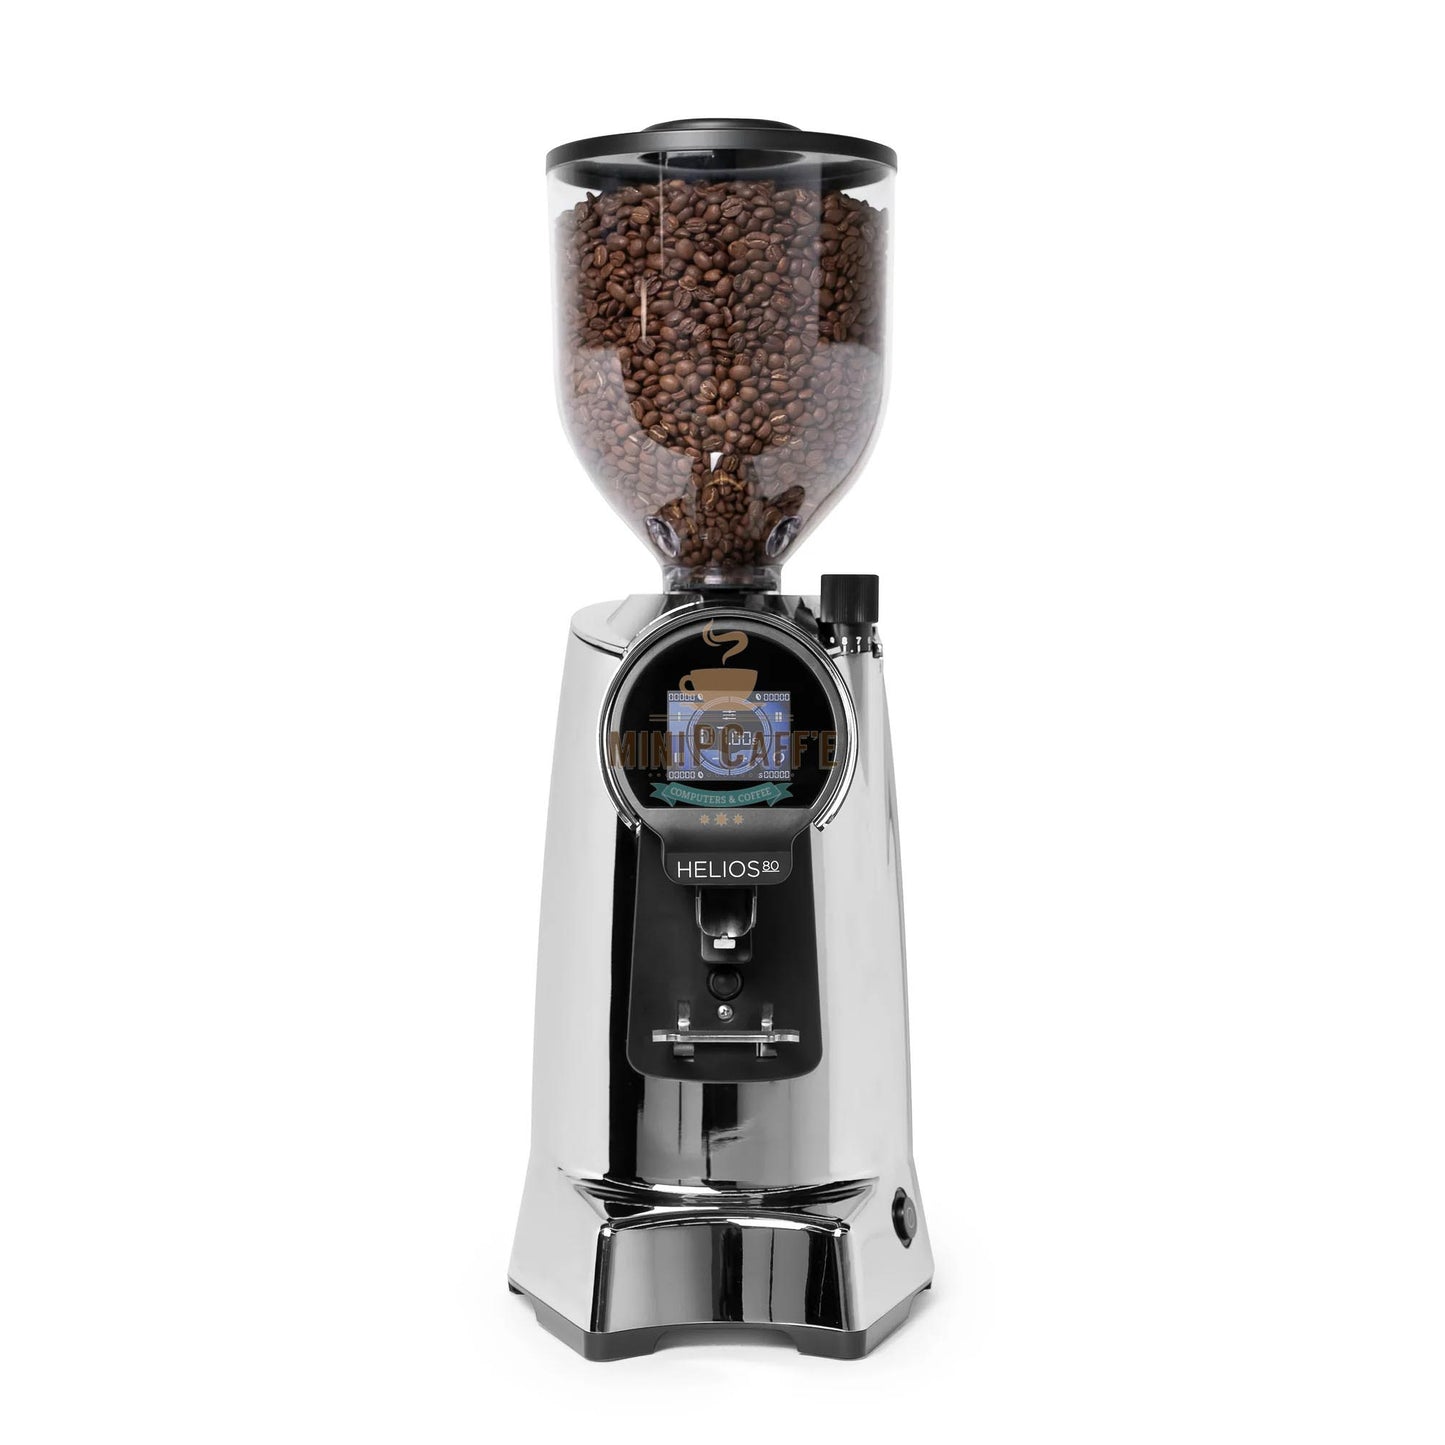 Eureka Helios 80 Coffee Grinder